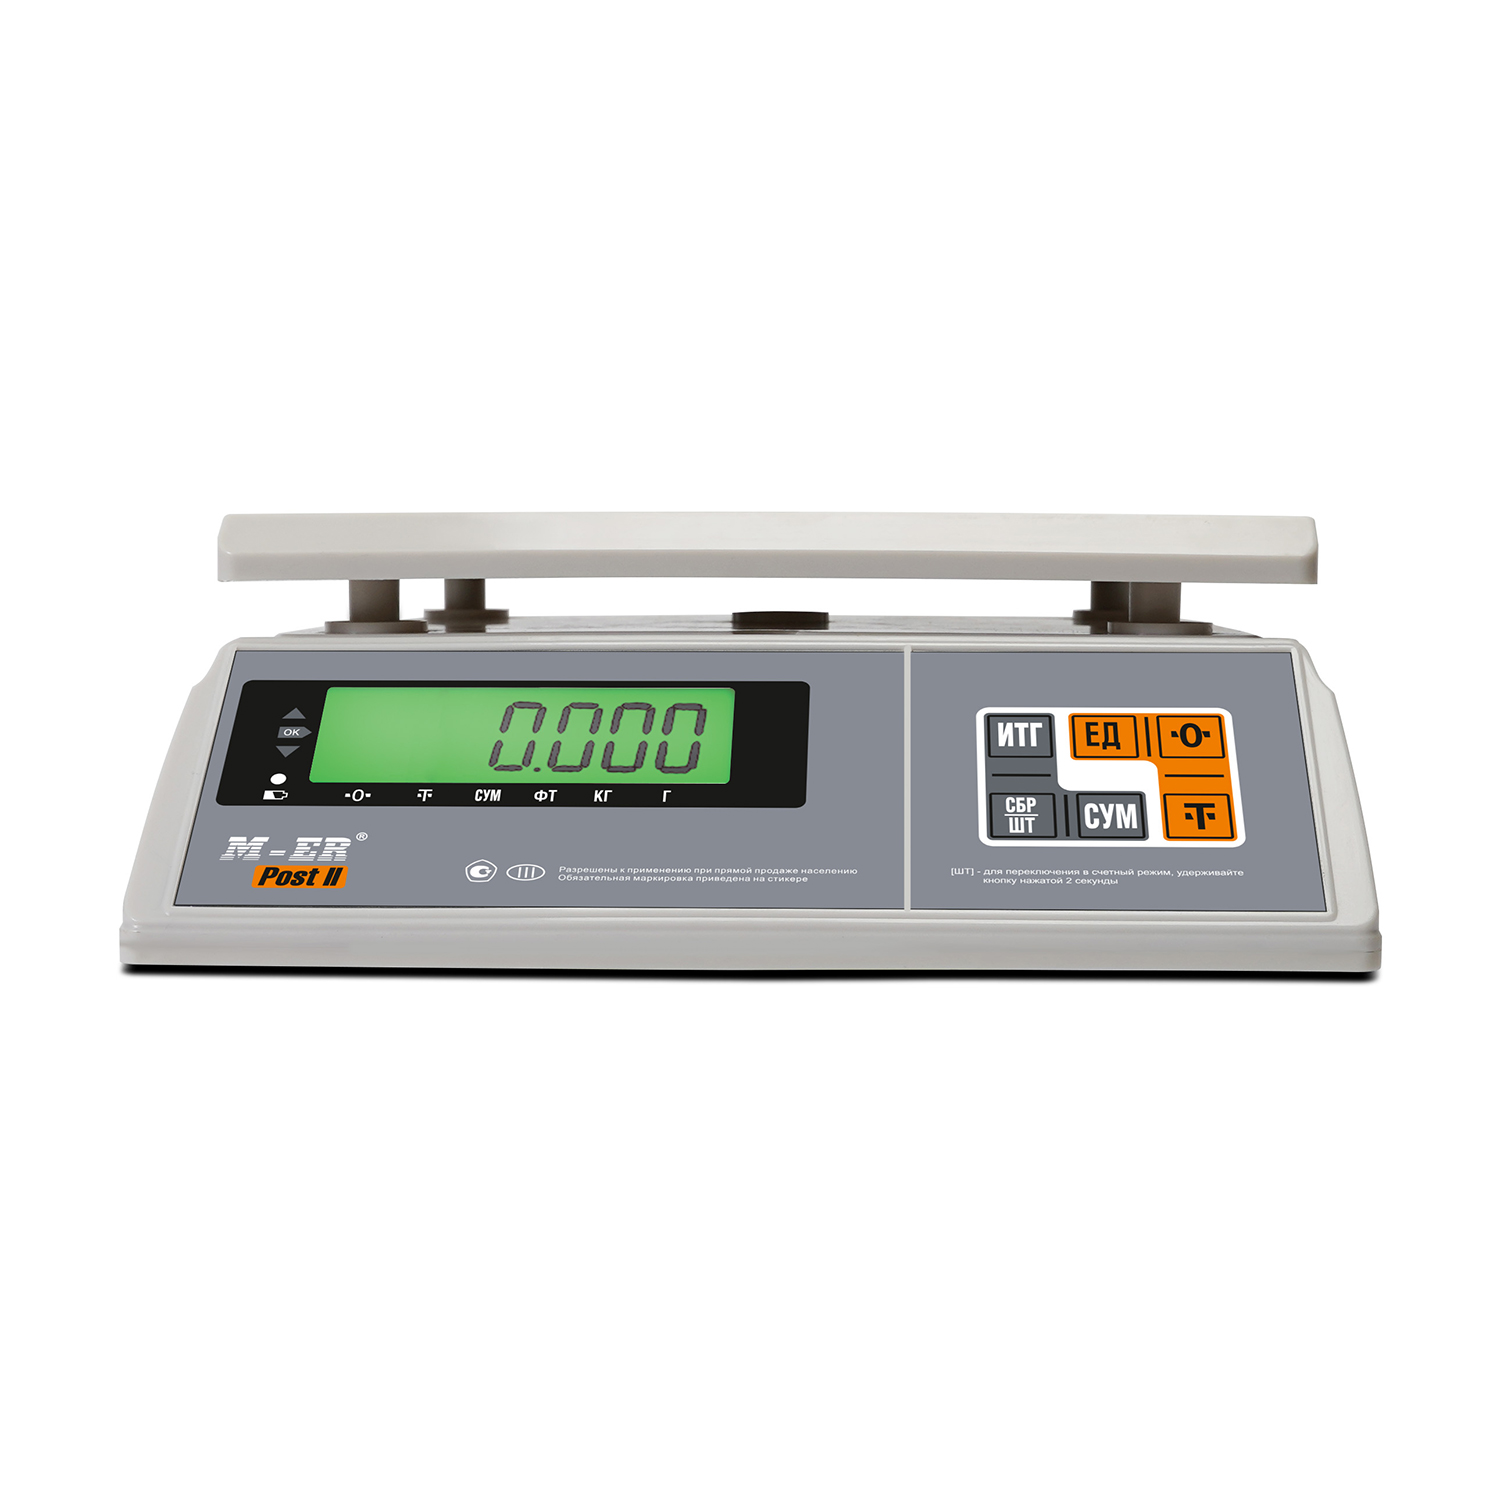 Порционные весы M-ER 326 AFU-32.1 "Post II" LCD (3061)